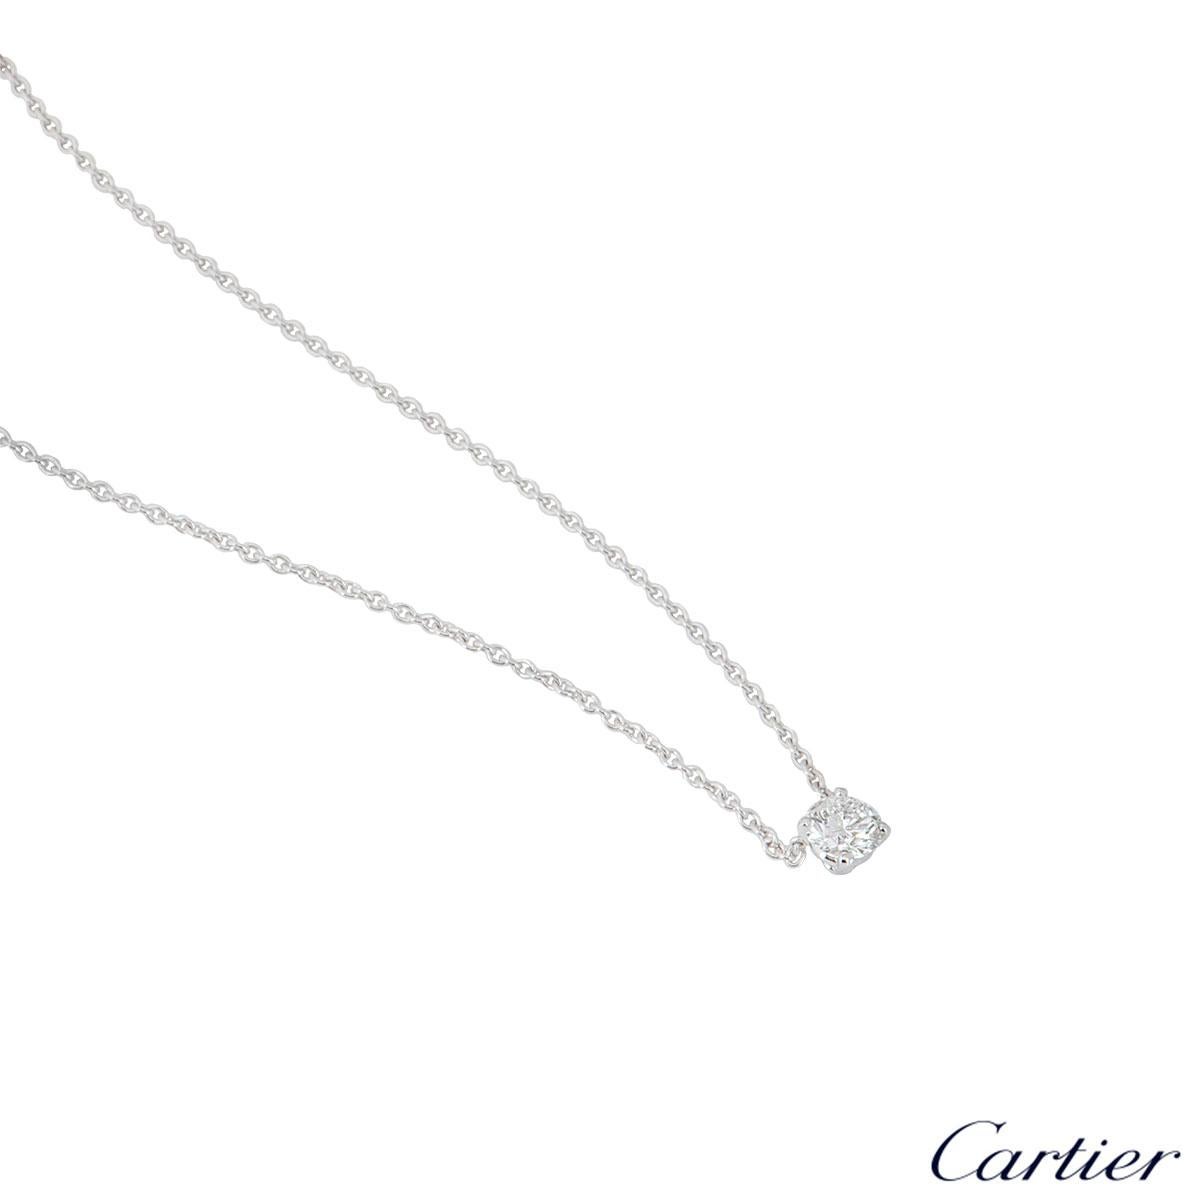 cartier single diamond necklace price